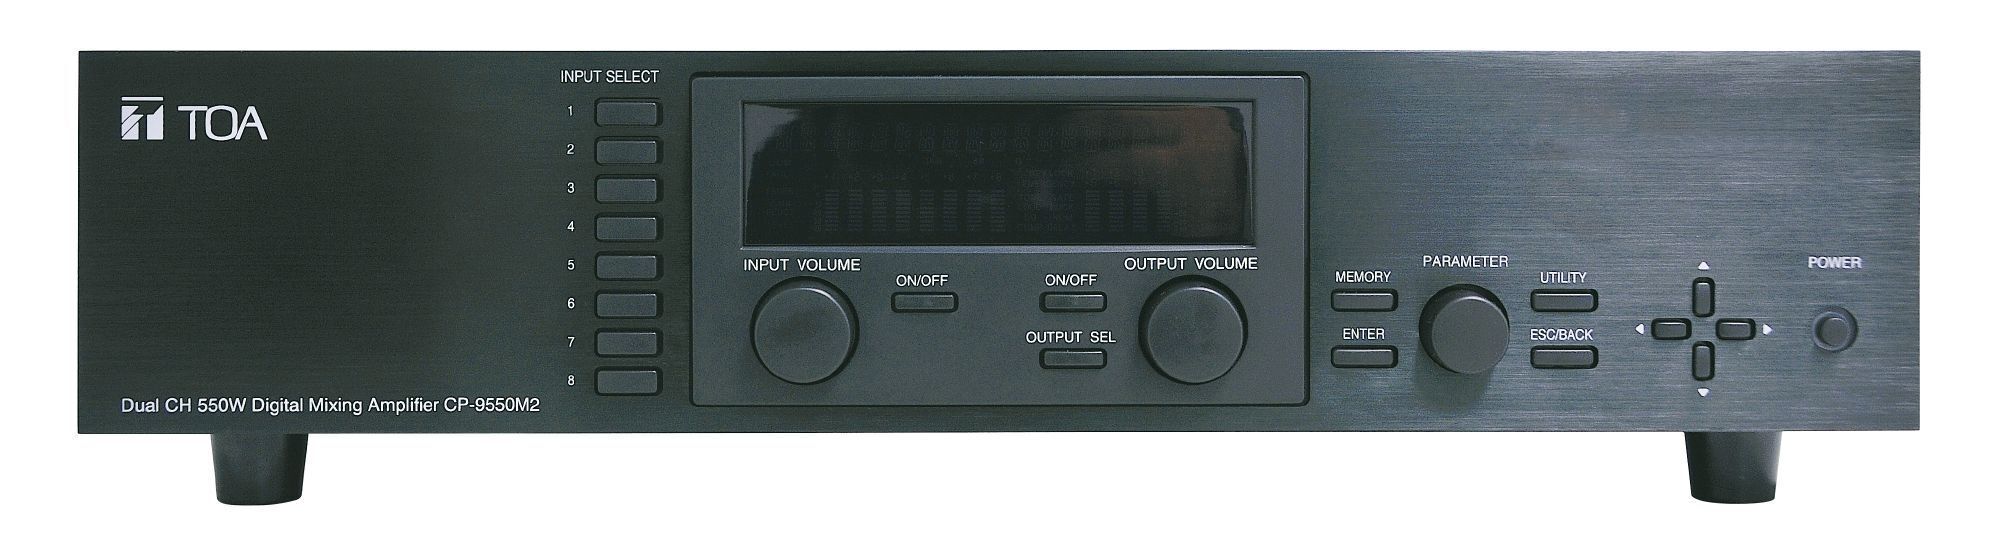 Звуковое оборудование Toa cp-9500m2-eb